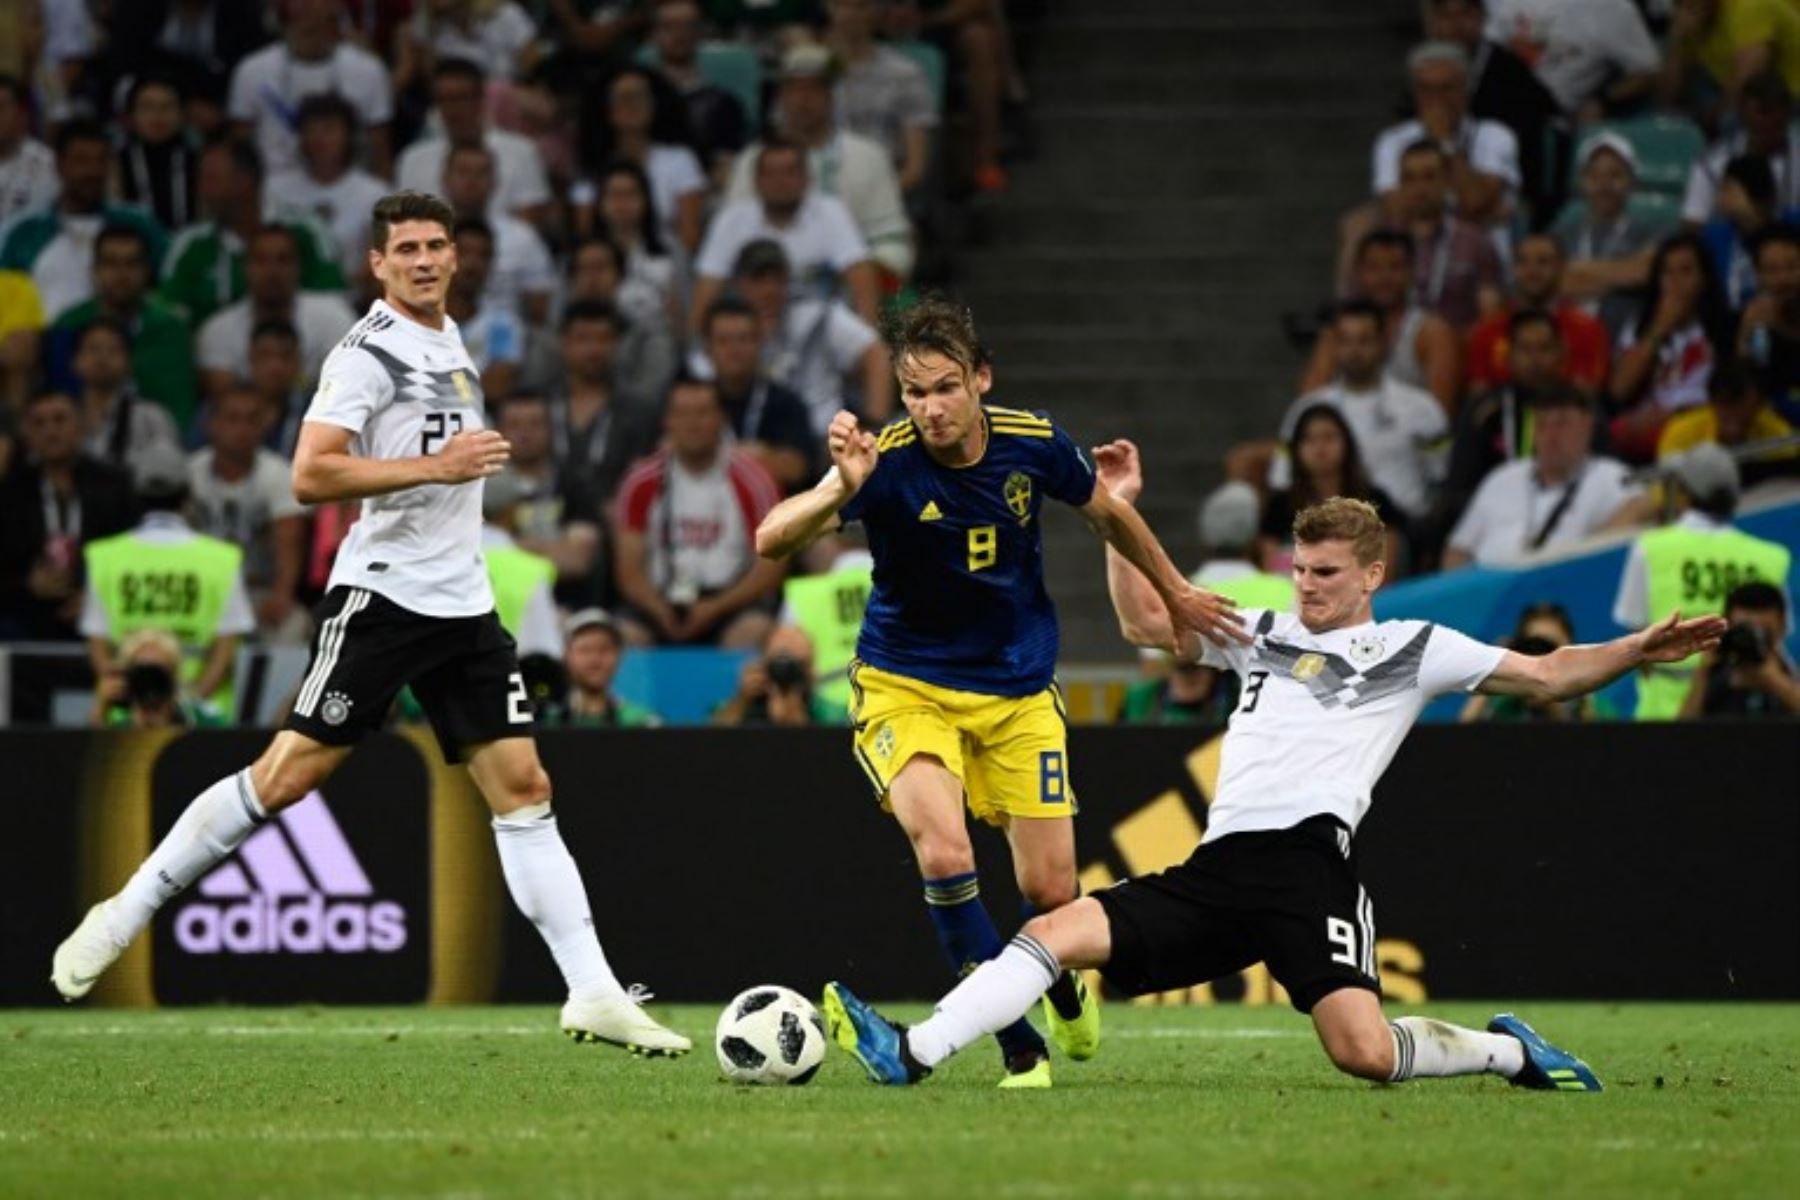 El centrocampista sueco Albin Ekdal es tackleado por el delantero alemán Timo Werner,  durante el partido de fútbol del Grupo F de la Copa del Mundo Rusia 2018 entre Alemania y Suecia.Foto:AFP